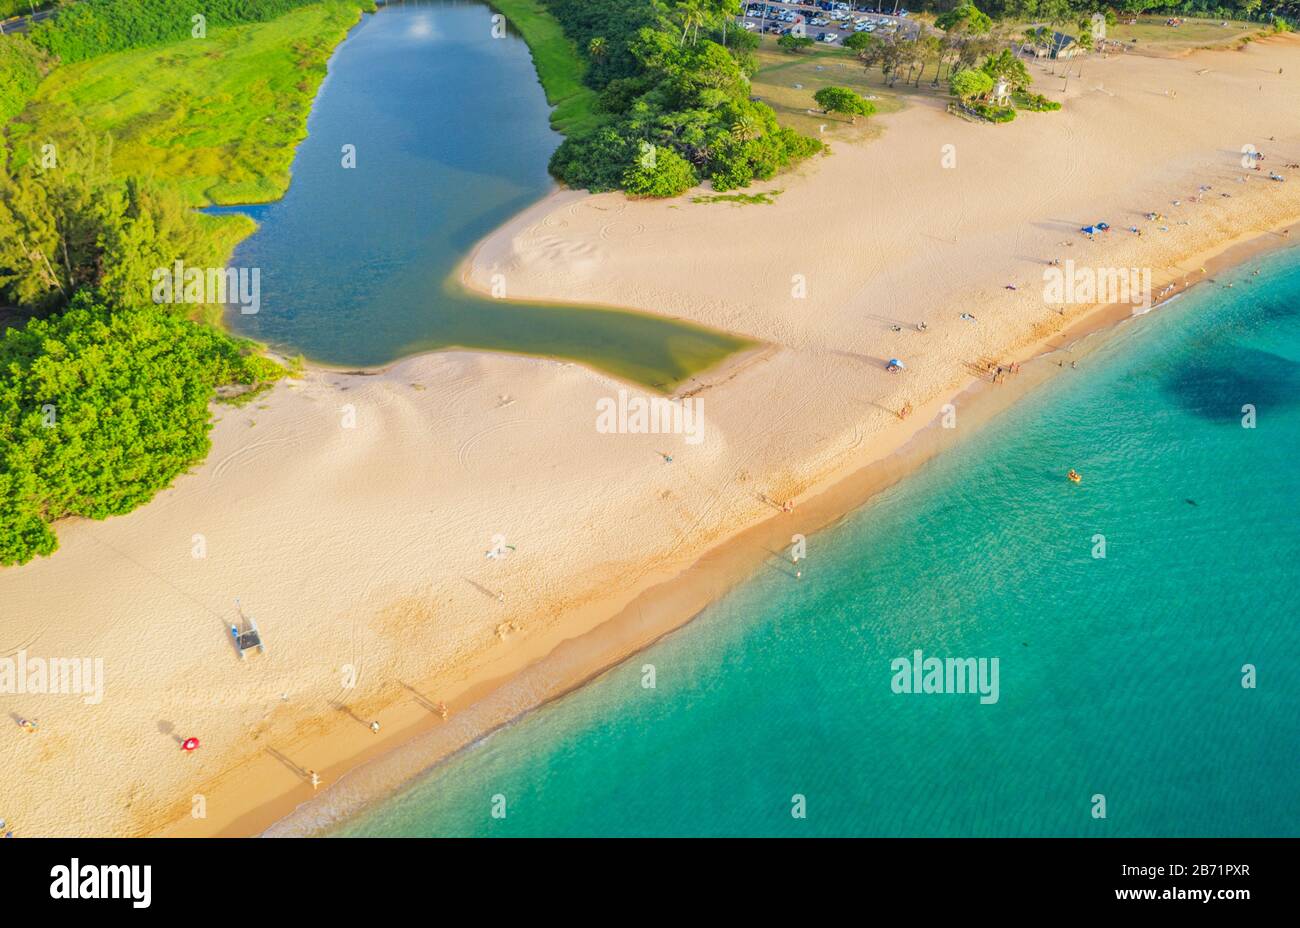 États-Unis d'Amérique, Hawaï, île d'Oahu, rive nord, parc de plage de Waimea Bay, vue aérienne Banque D'Images